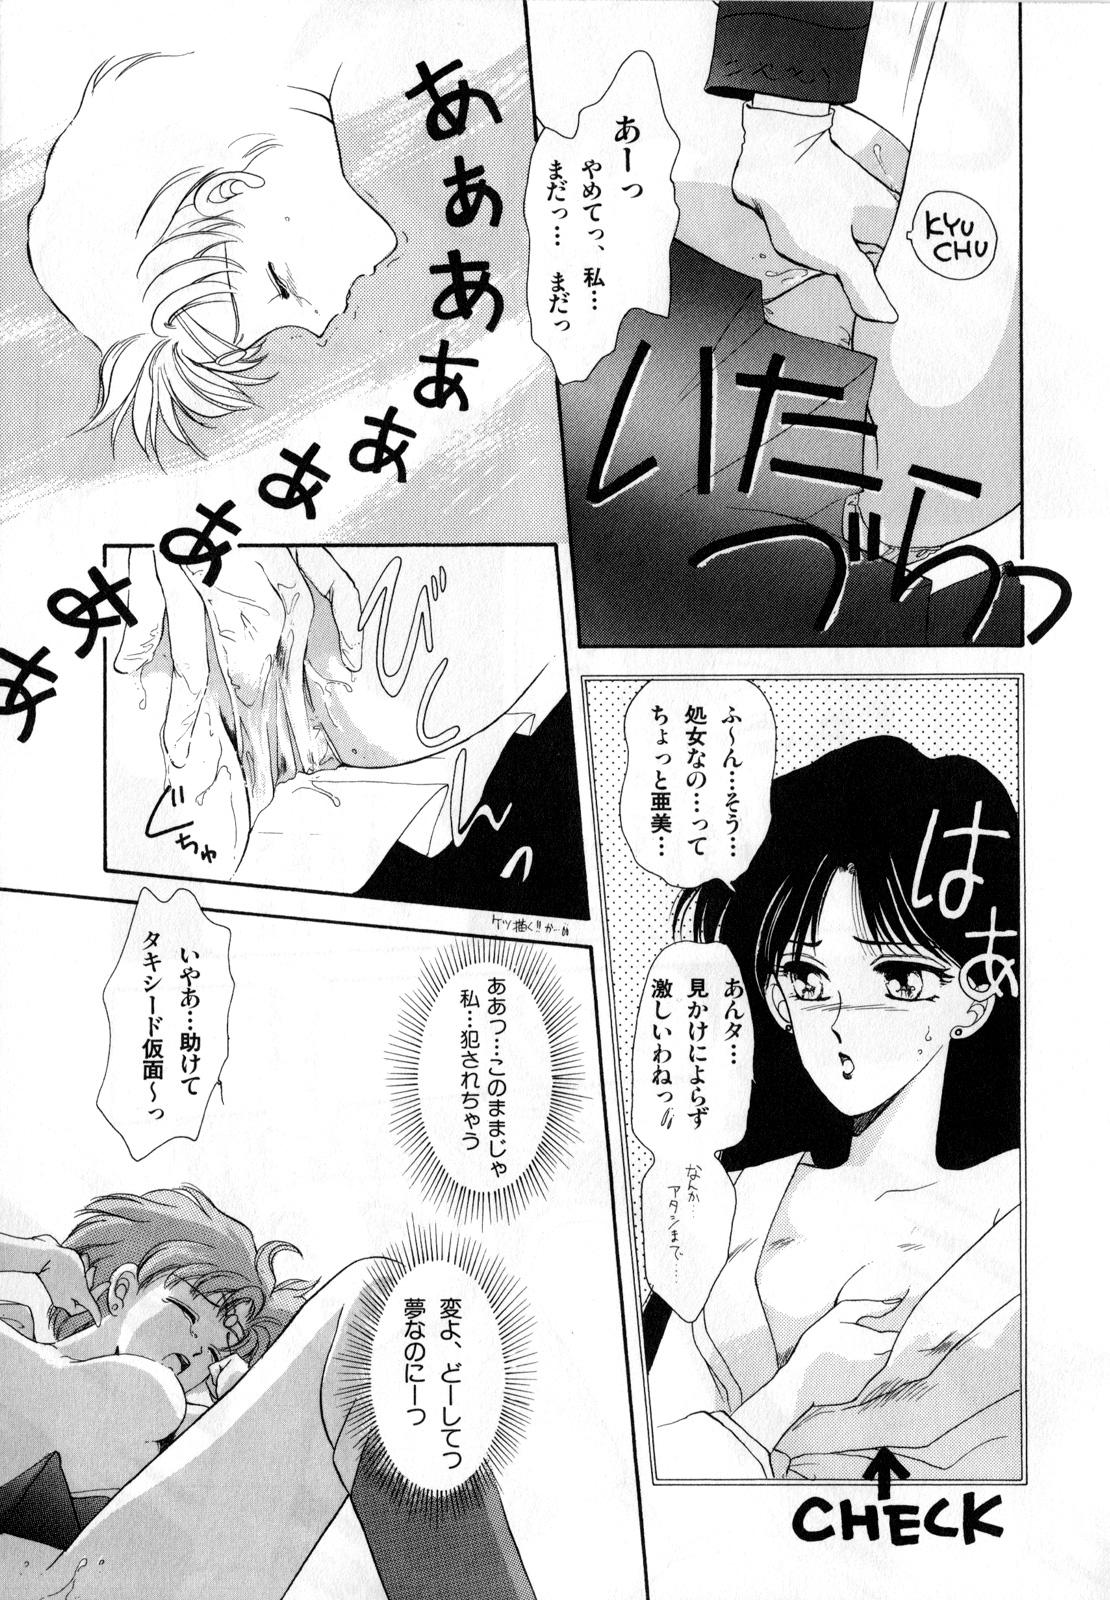 Bubble Butt Lunatic Party 1 - Sailor moon Pasivo - Page 12